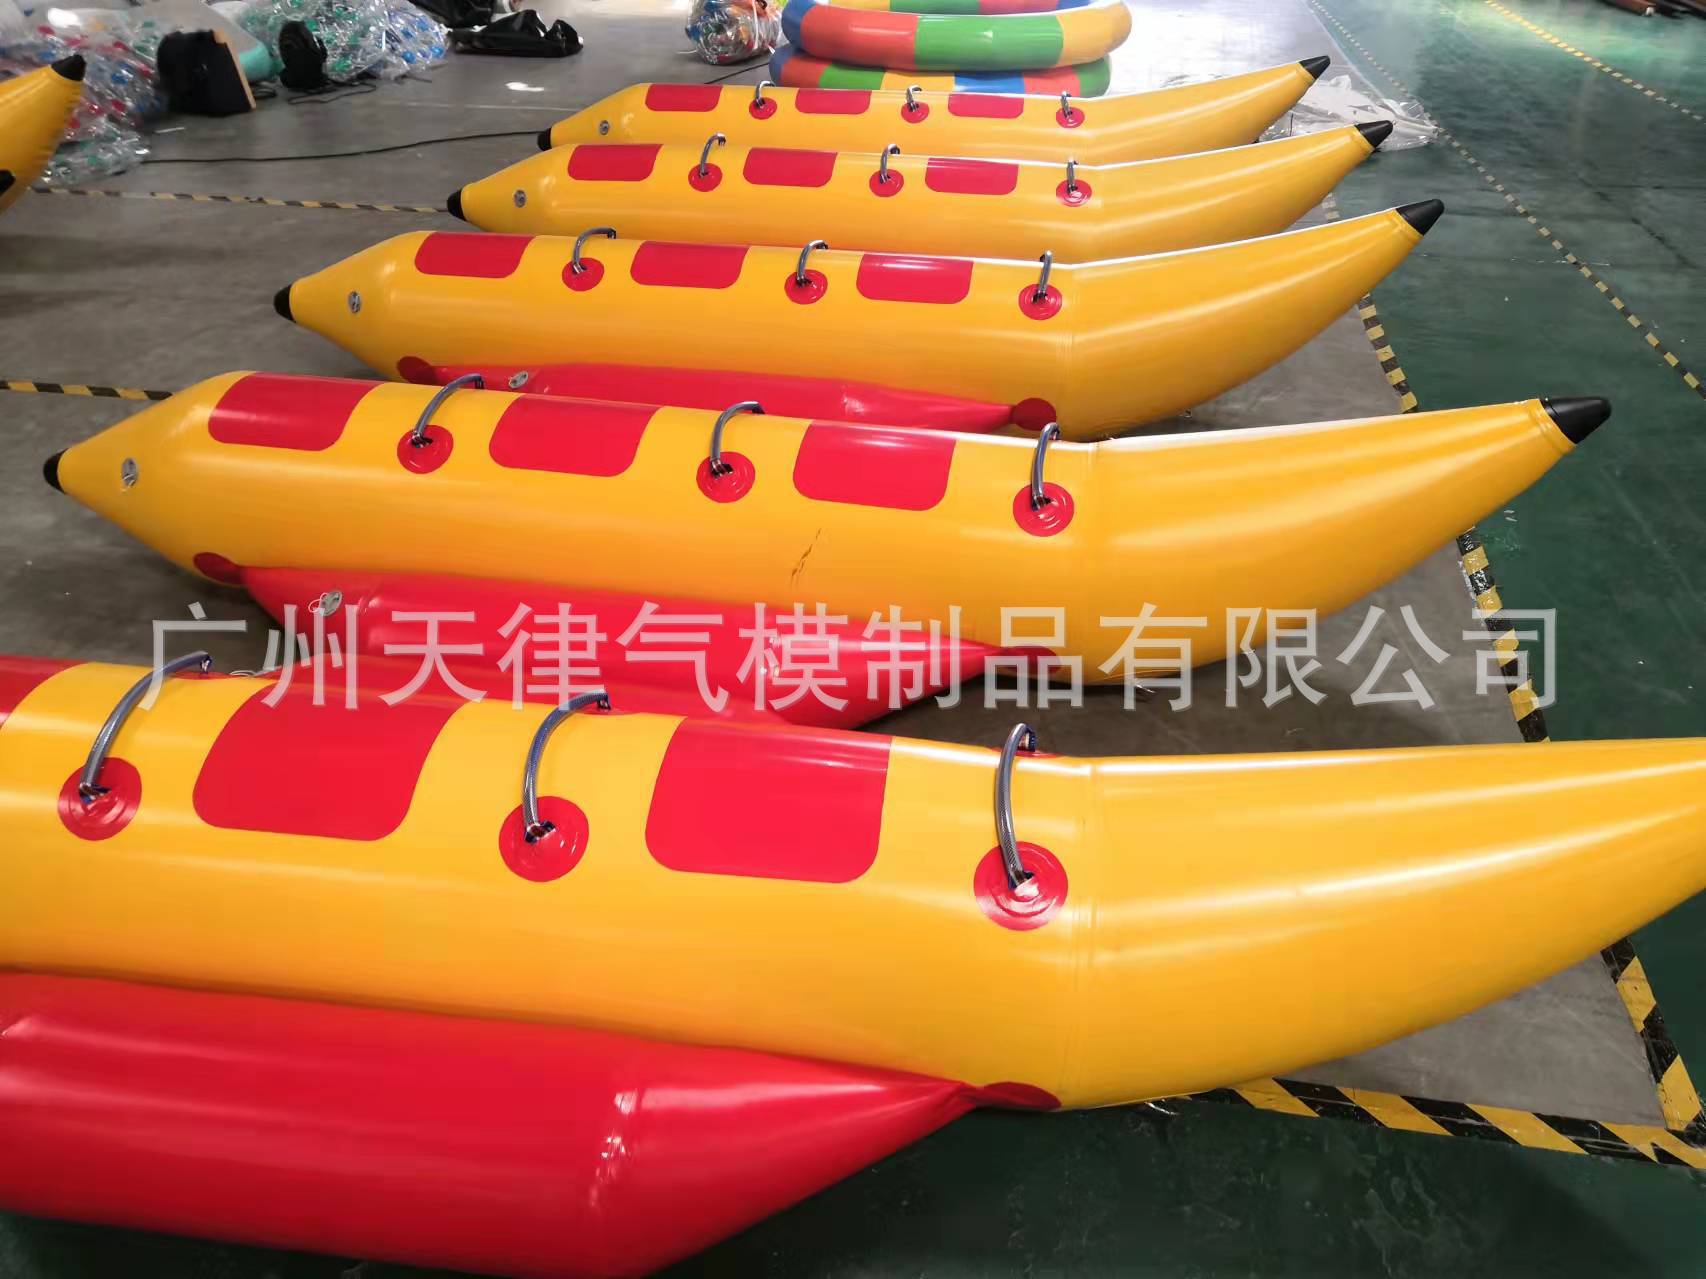 水上运动漂浮充气香蕉飞鱼船6人 - Buy 香蕉飞鱼船,充气香蕉飞鱼船,漂浮充气香蕉飞鱼船 Product on Alibaba.com